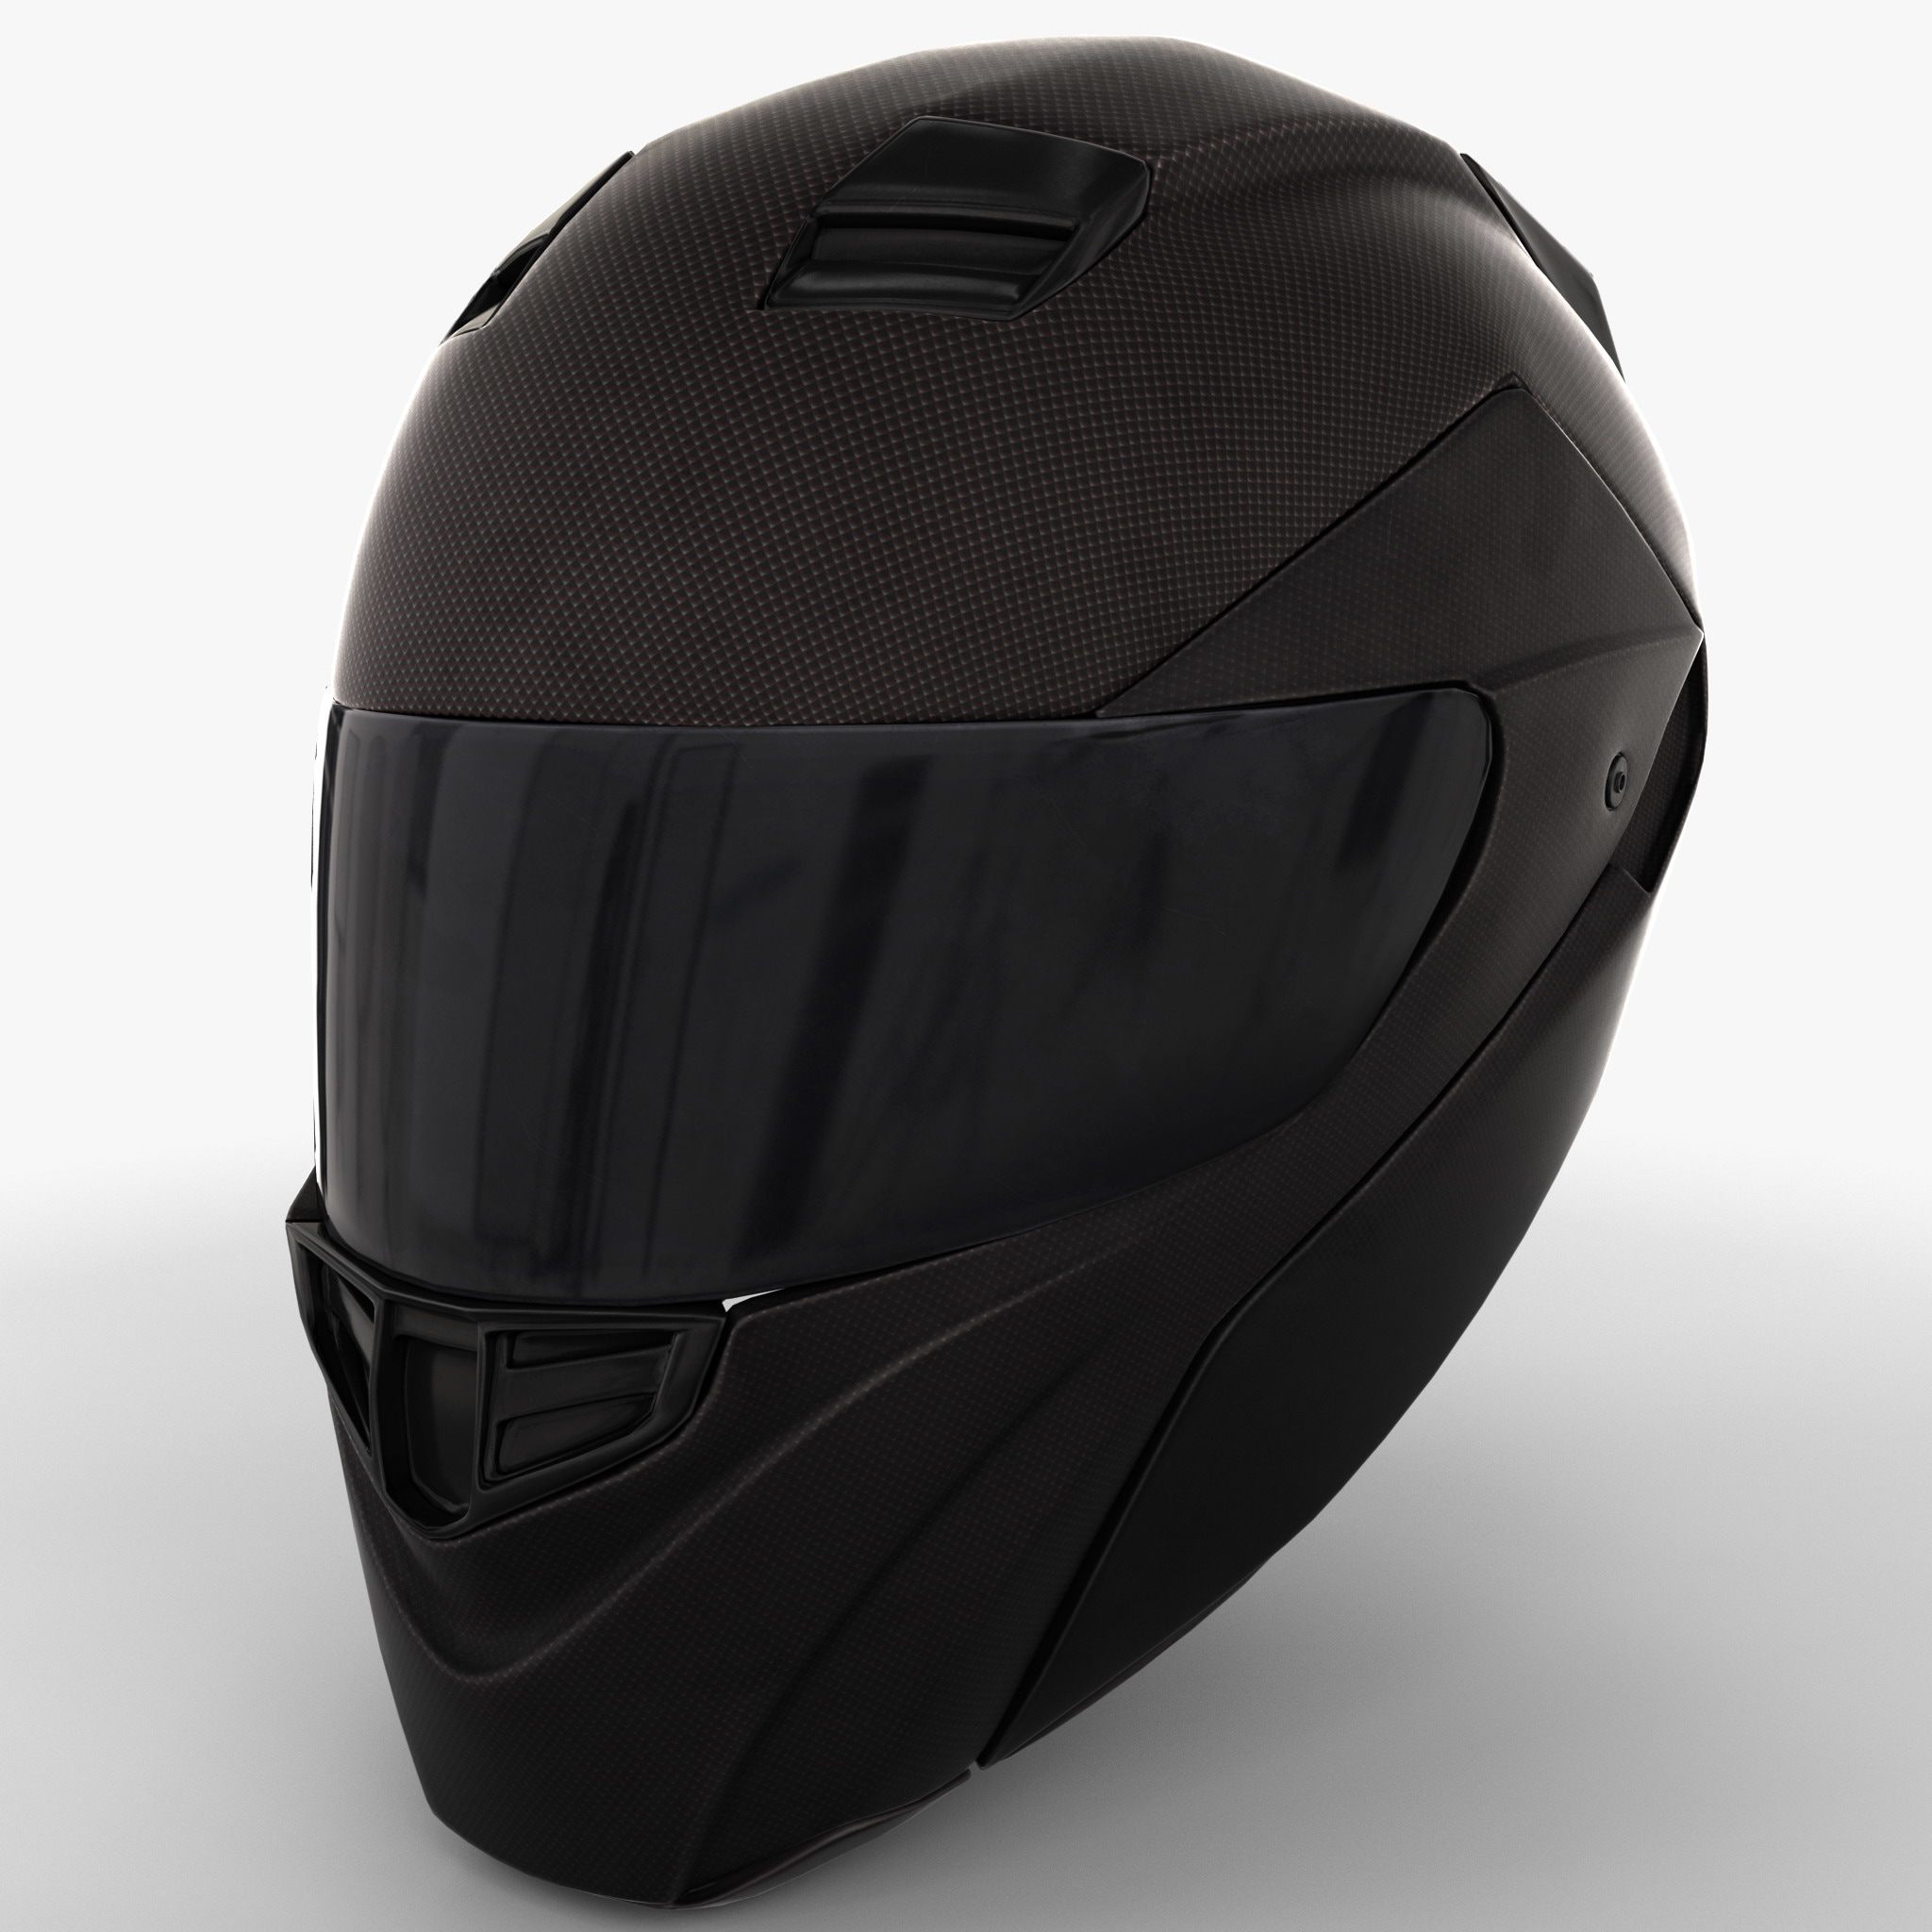 motorcycle helmet 3d model Free 3d model helmet uvex fp5 carbon on
behance